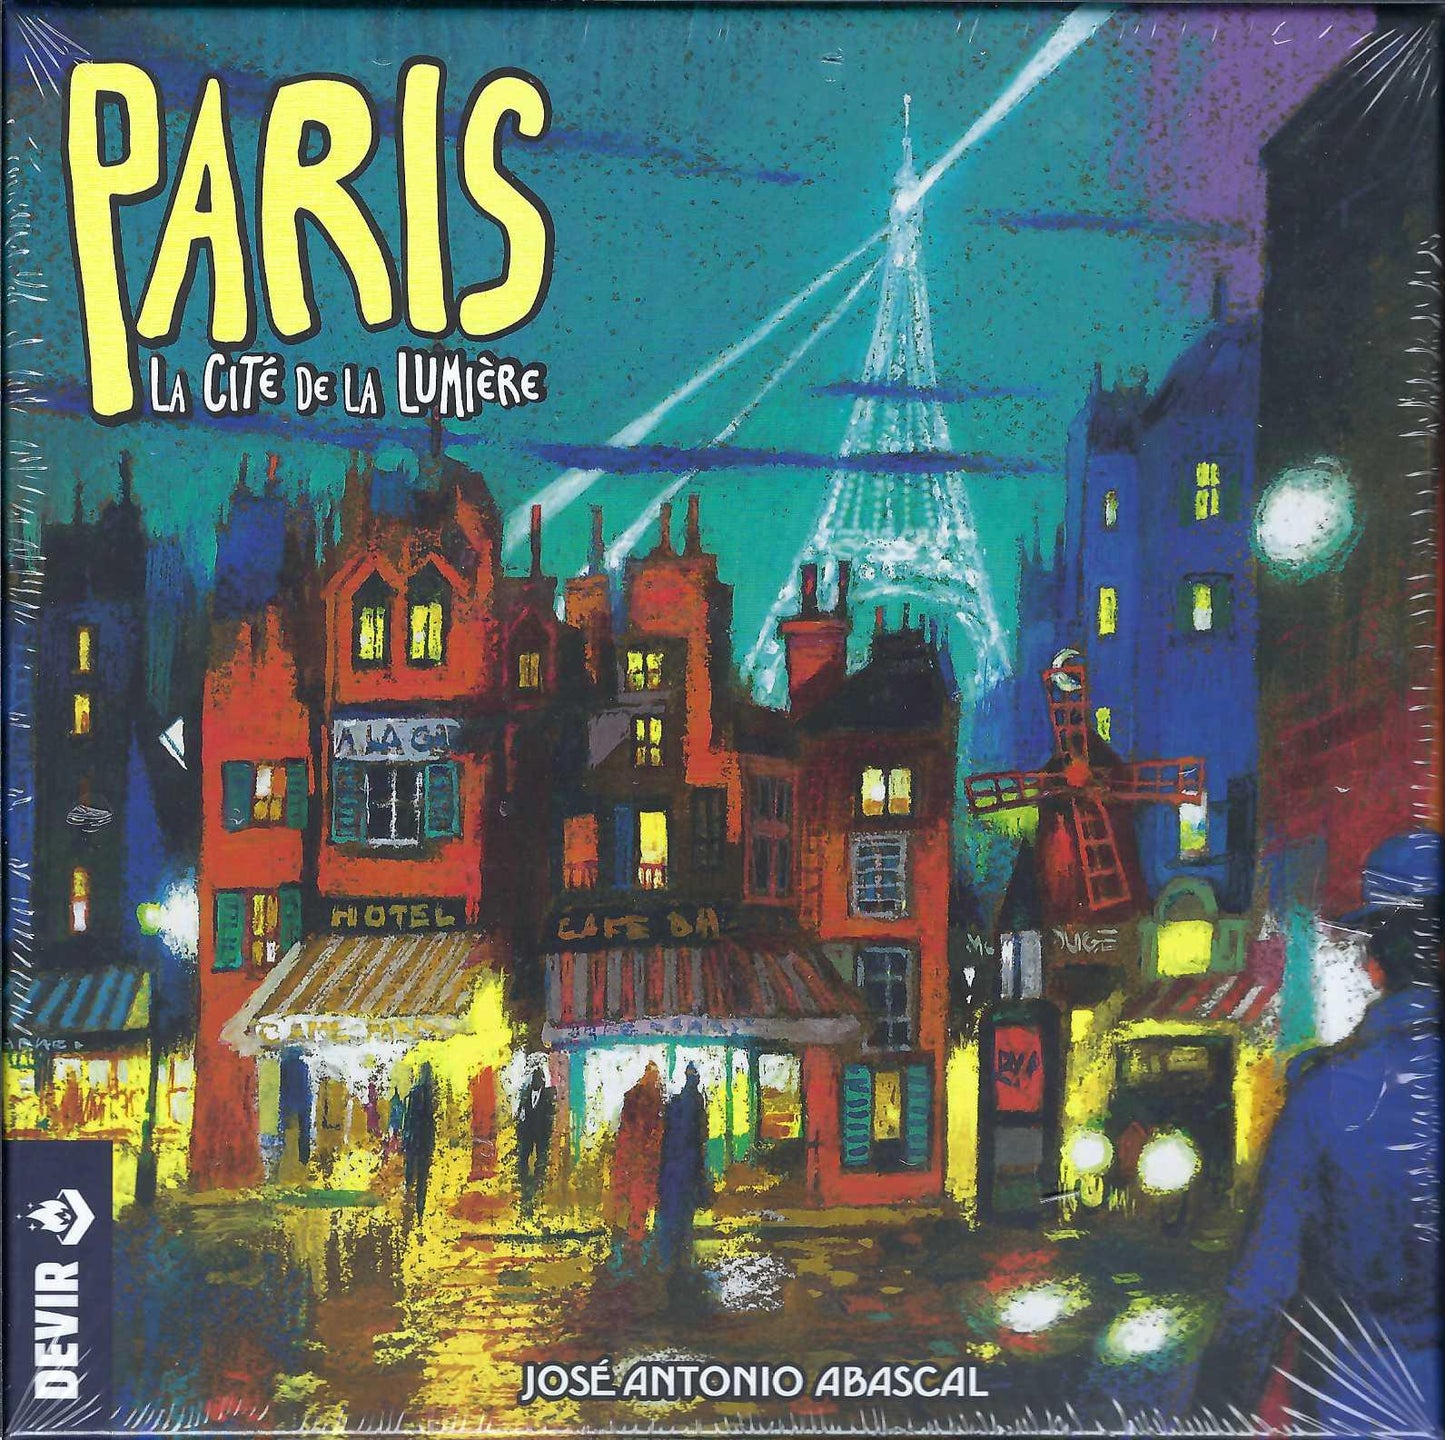 Paris La Cite De La Lumiere cover